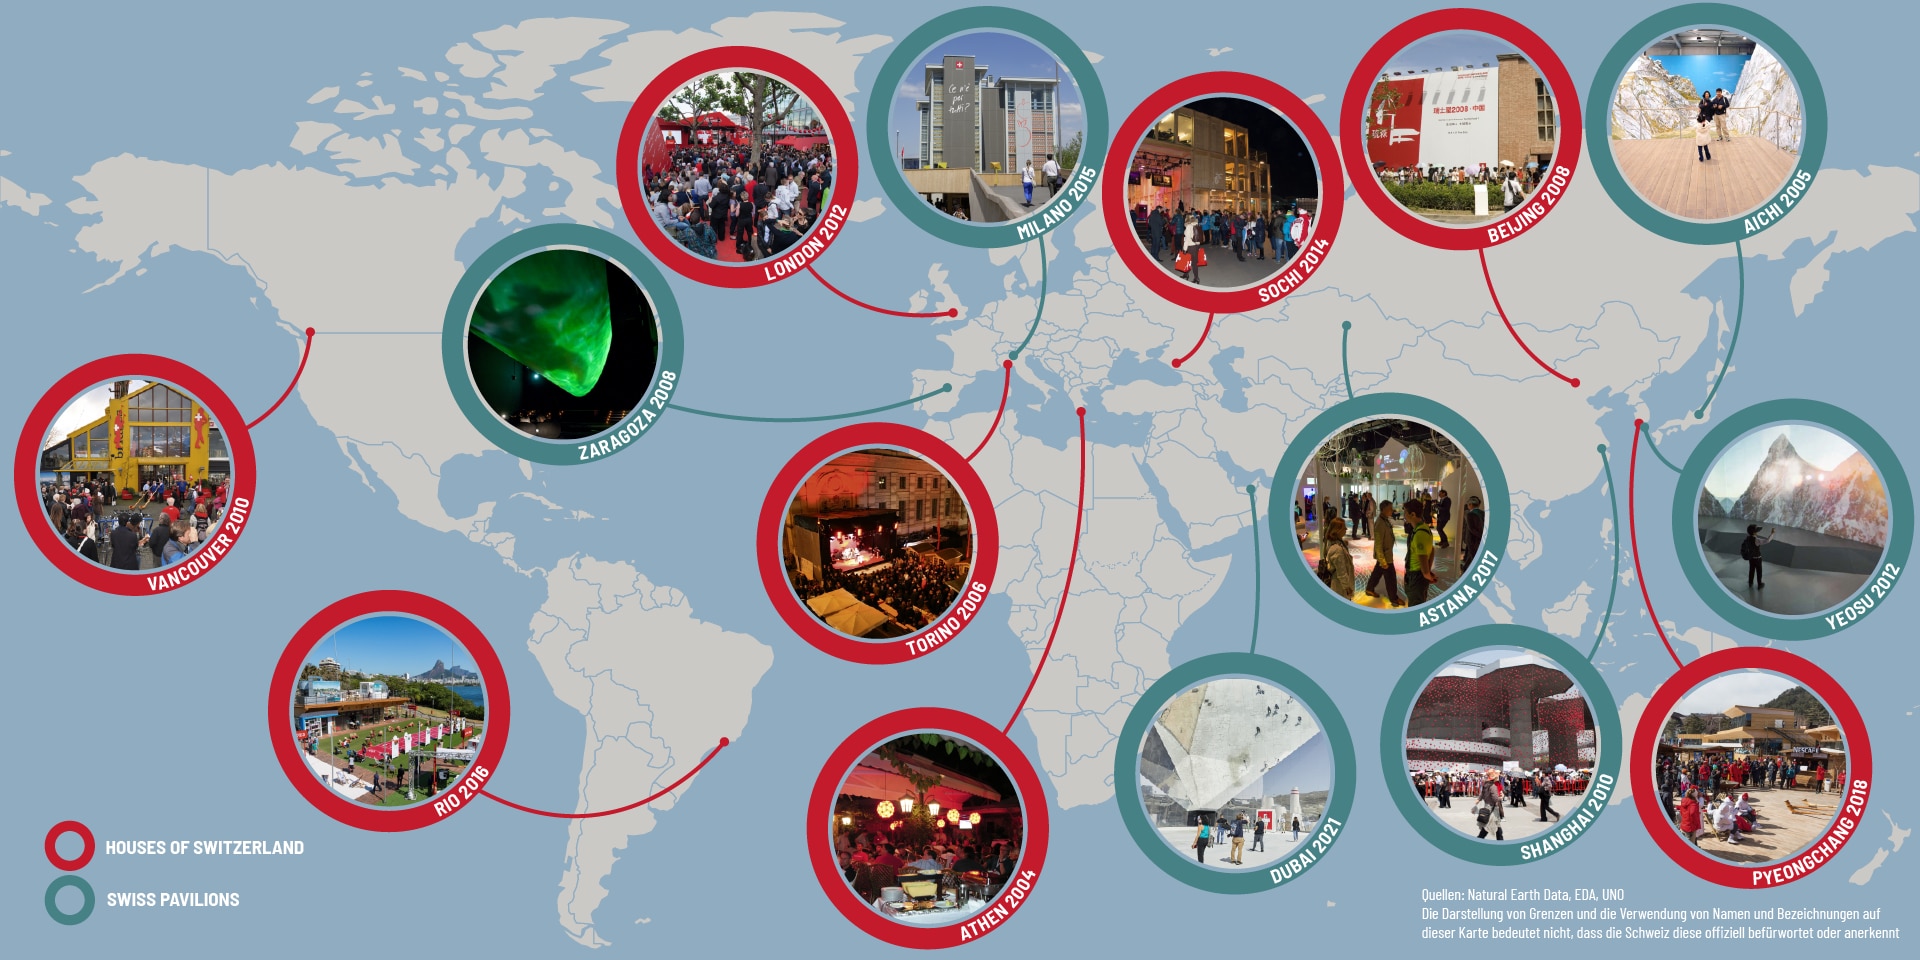 Grafische Darstellung einer Weltkarte mit verschiedenen kleinen Bildern von Schweizer Pavillons und dem «House of Switzerland» bei internationalen Grossanlässen.